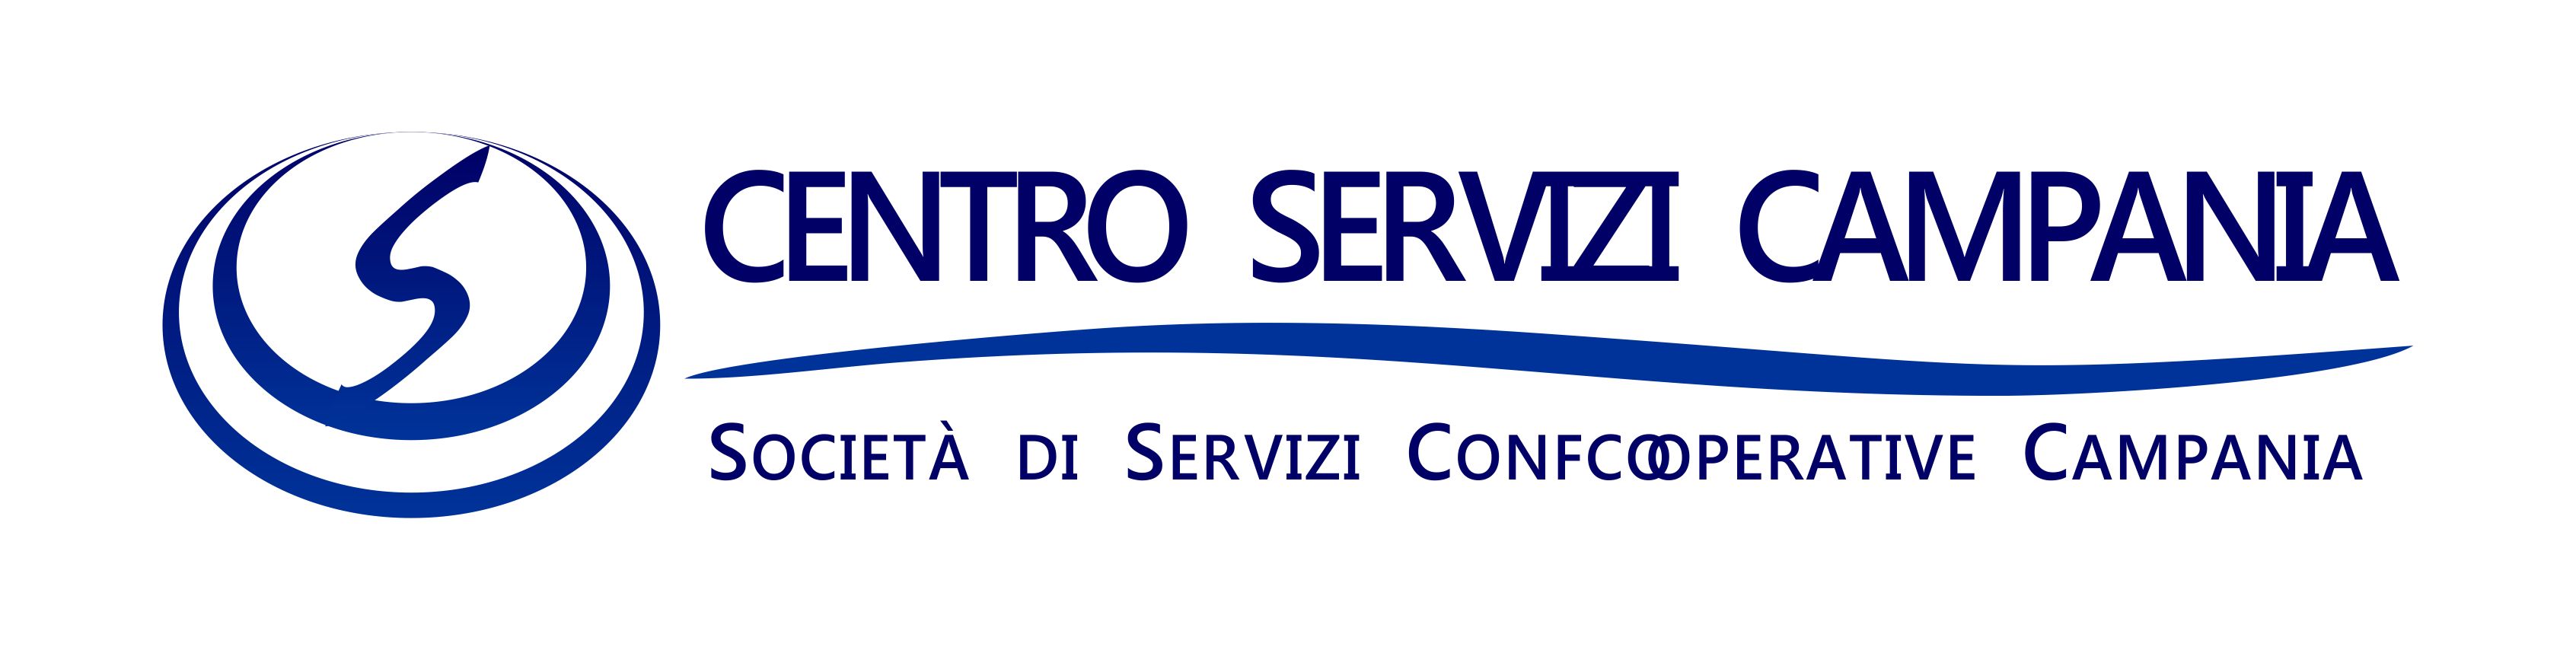 Centro Servizi Campania: visita il portale on line e richiedi il tuo servizio